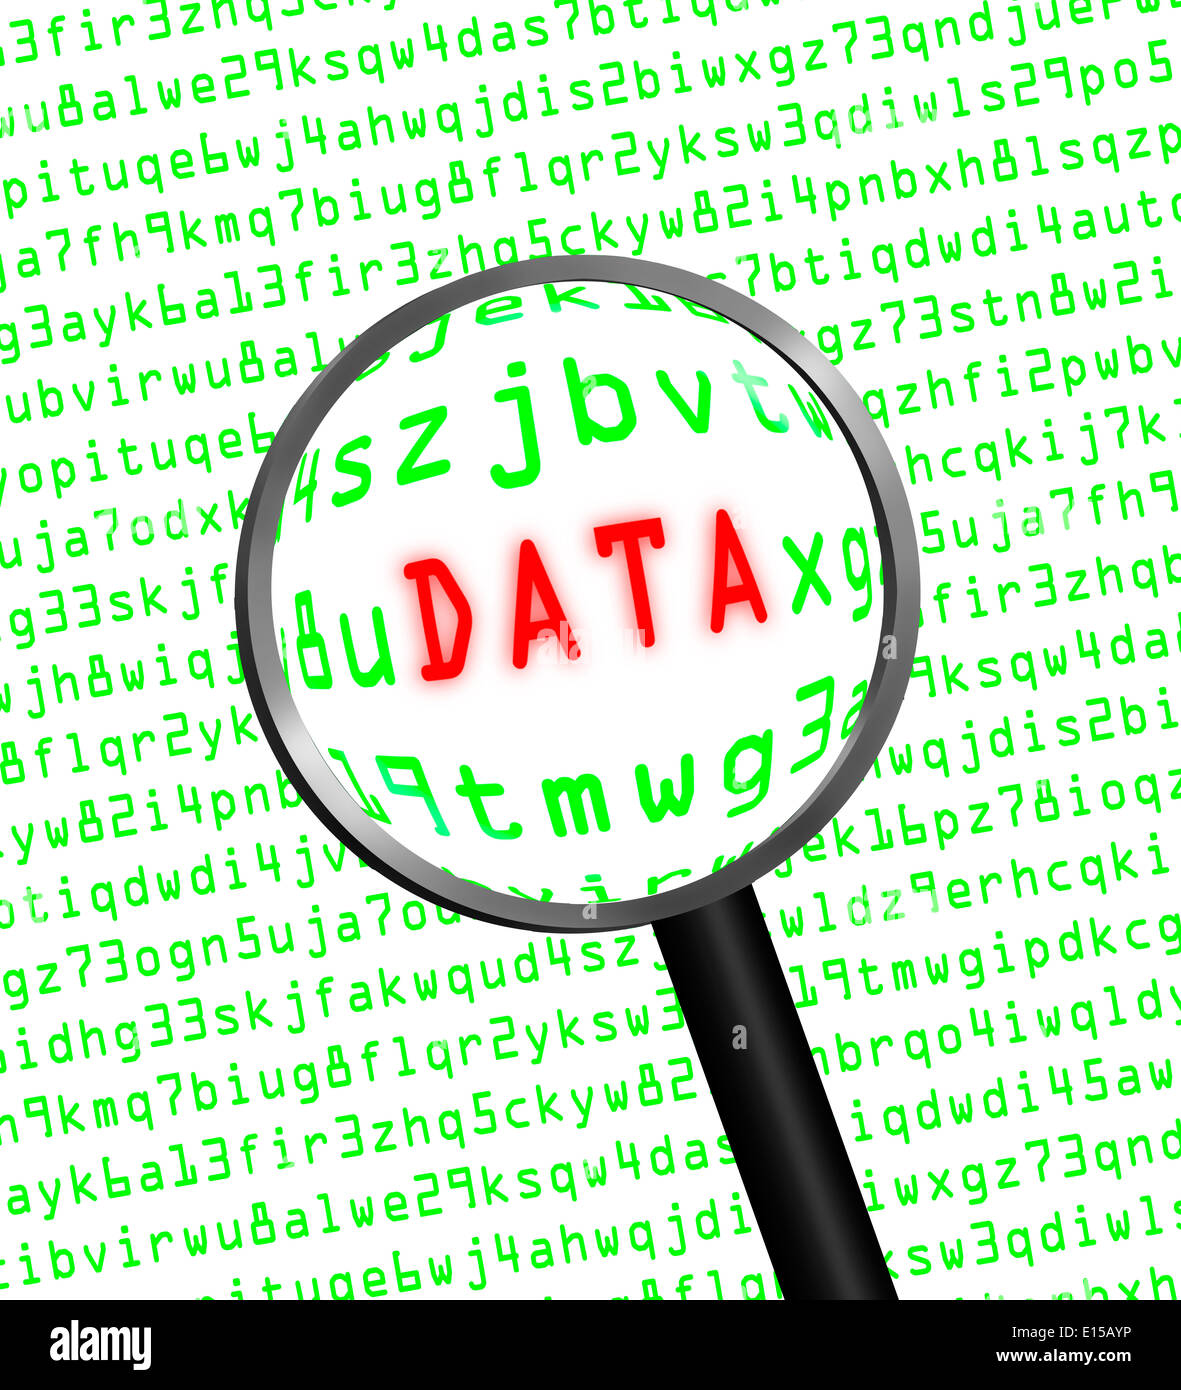 Le mot 'Data' en rouge révélé dans green computer code machine à travers une loupe. Arrière-plan blanc. Banque D'Images